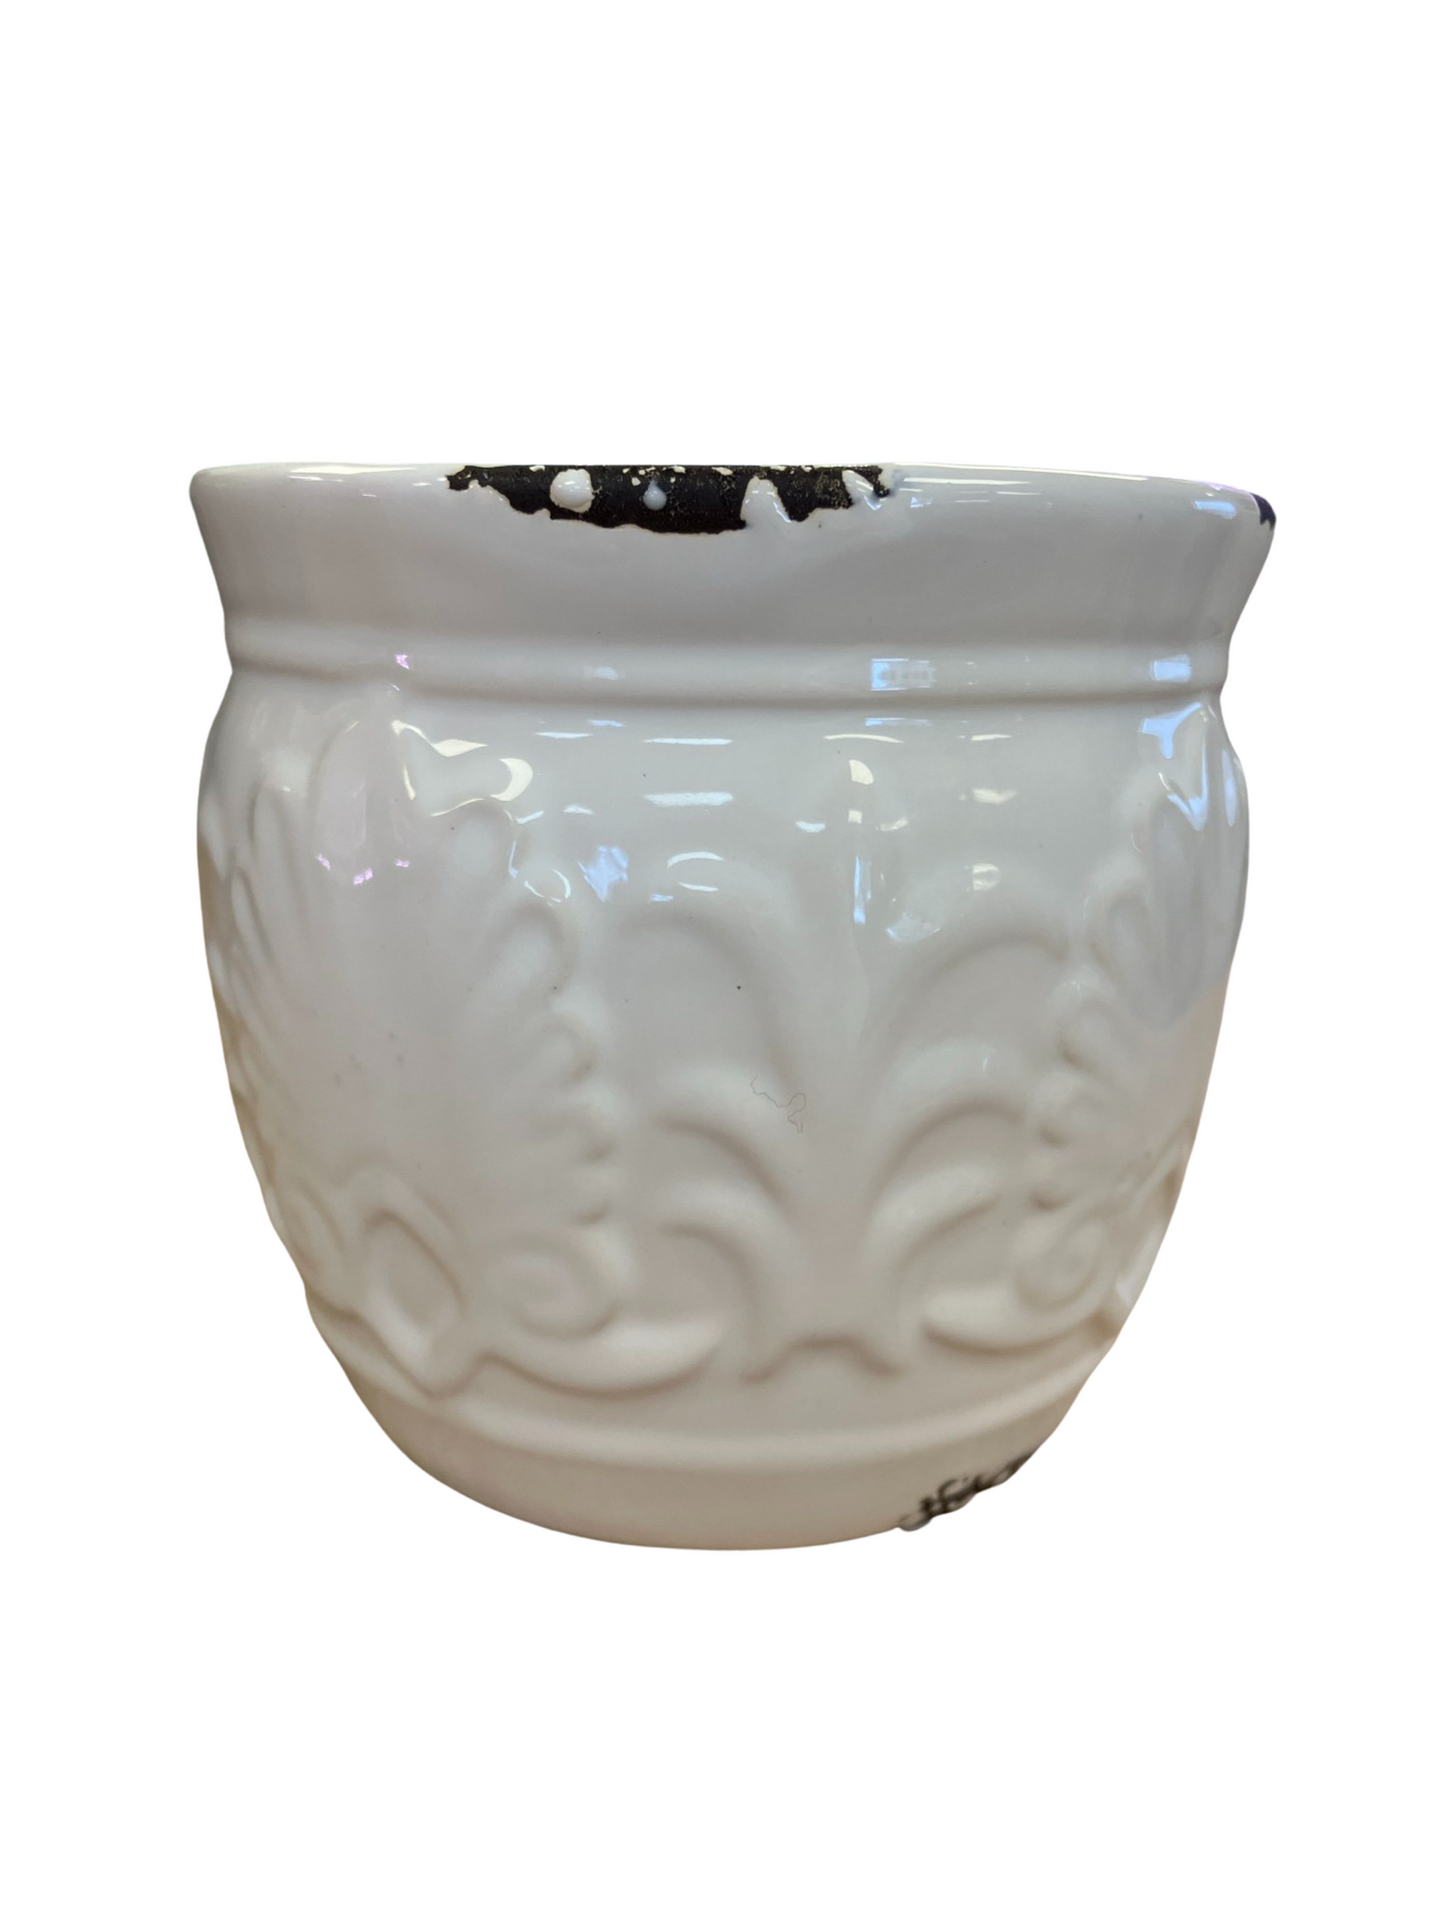 Ceramic Cache Pot - Antique White - 4"